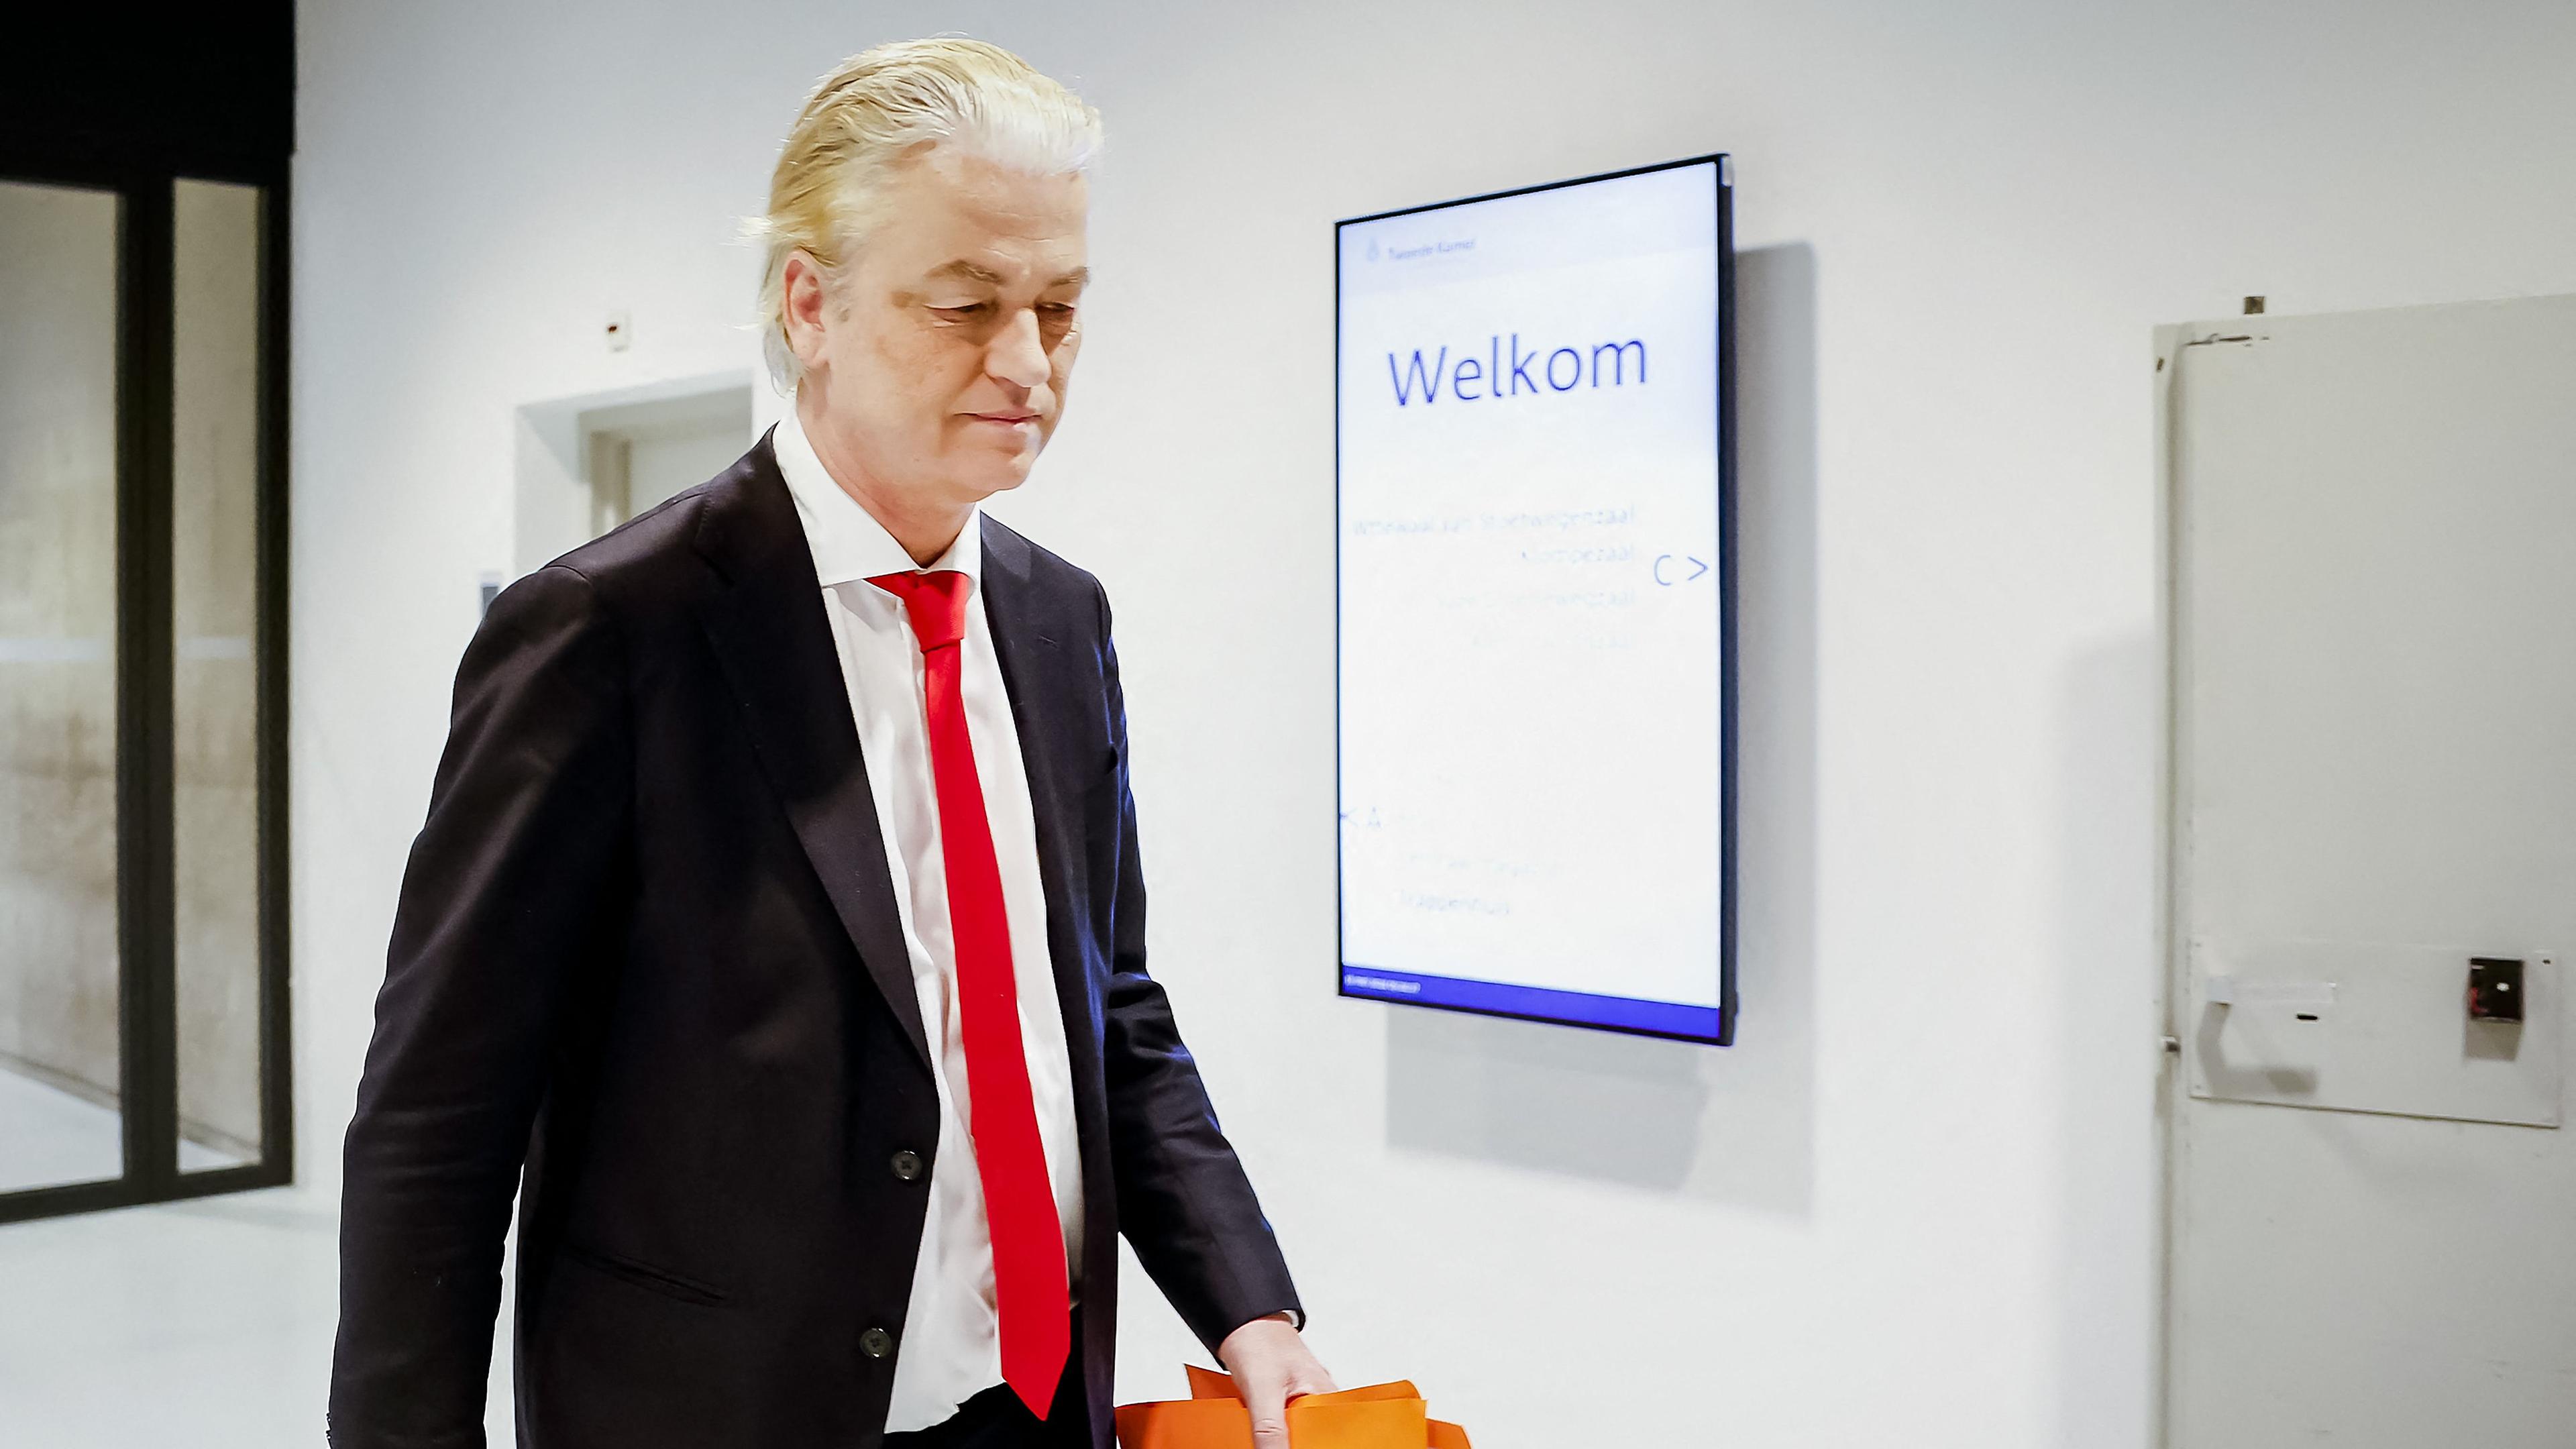 Man sieht den niederländischen Politiker Wilders in einem Gang am Laufen.